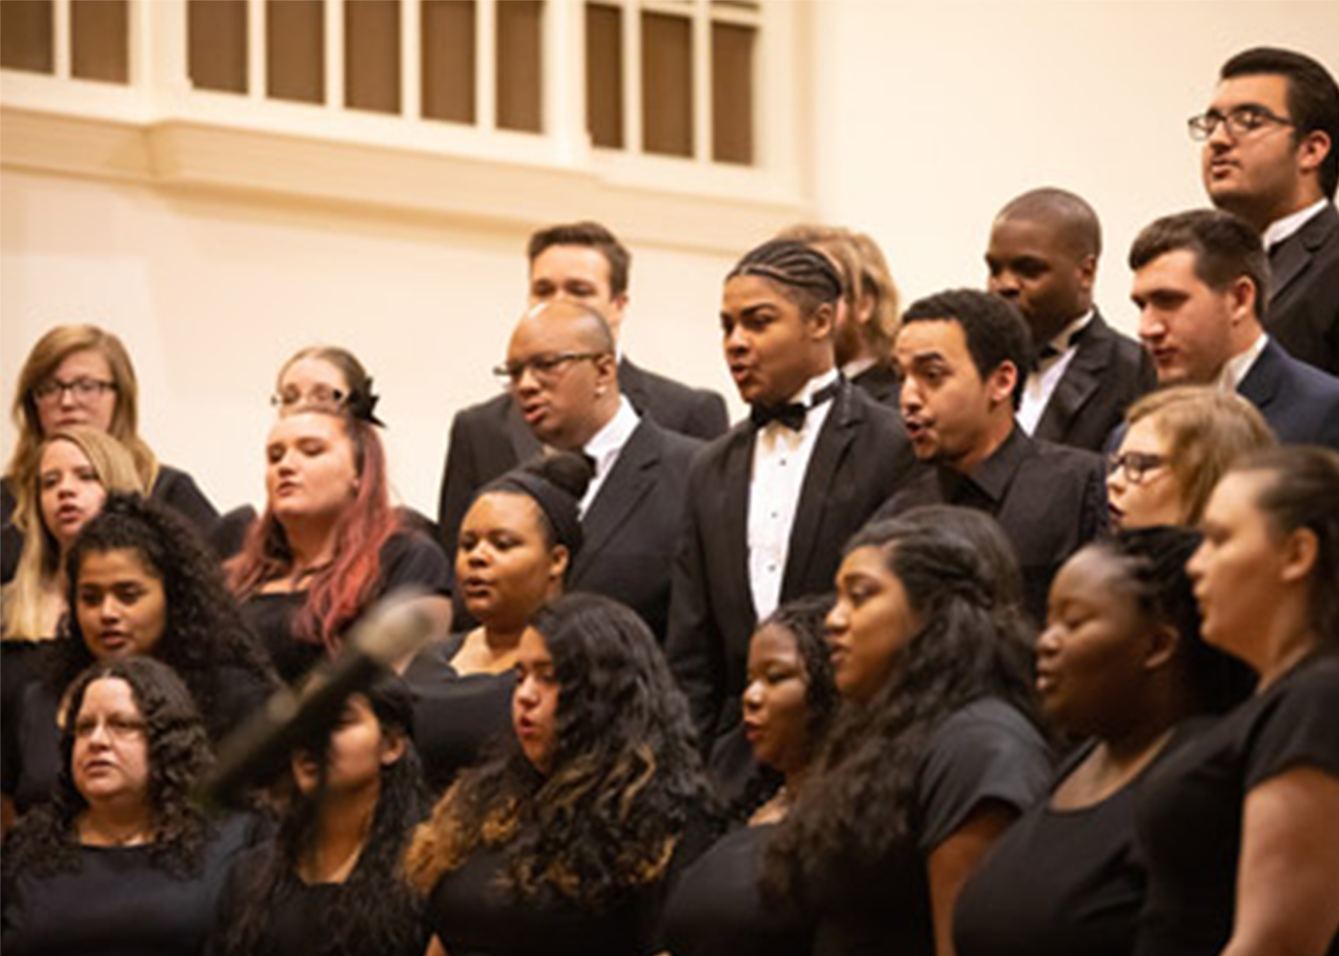 Oratorio Choir at Bridgewater College to Perform ‘Trinity Te Deum’ and ‘Requiem’